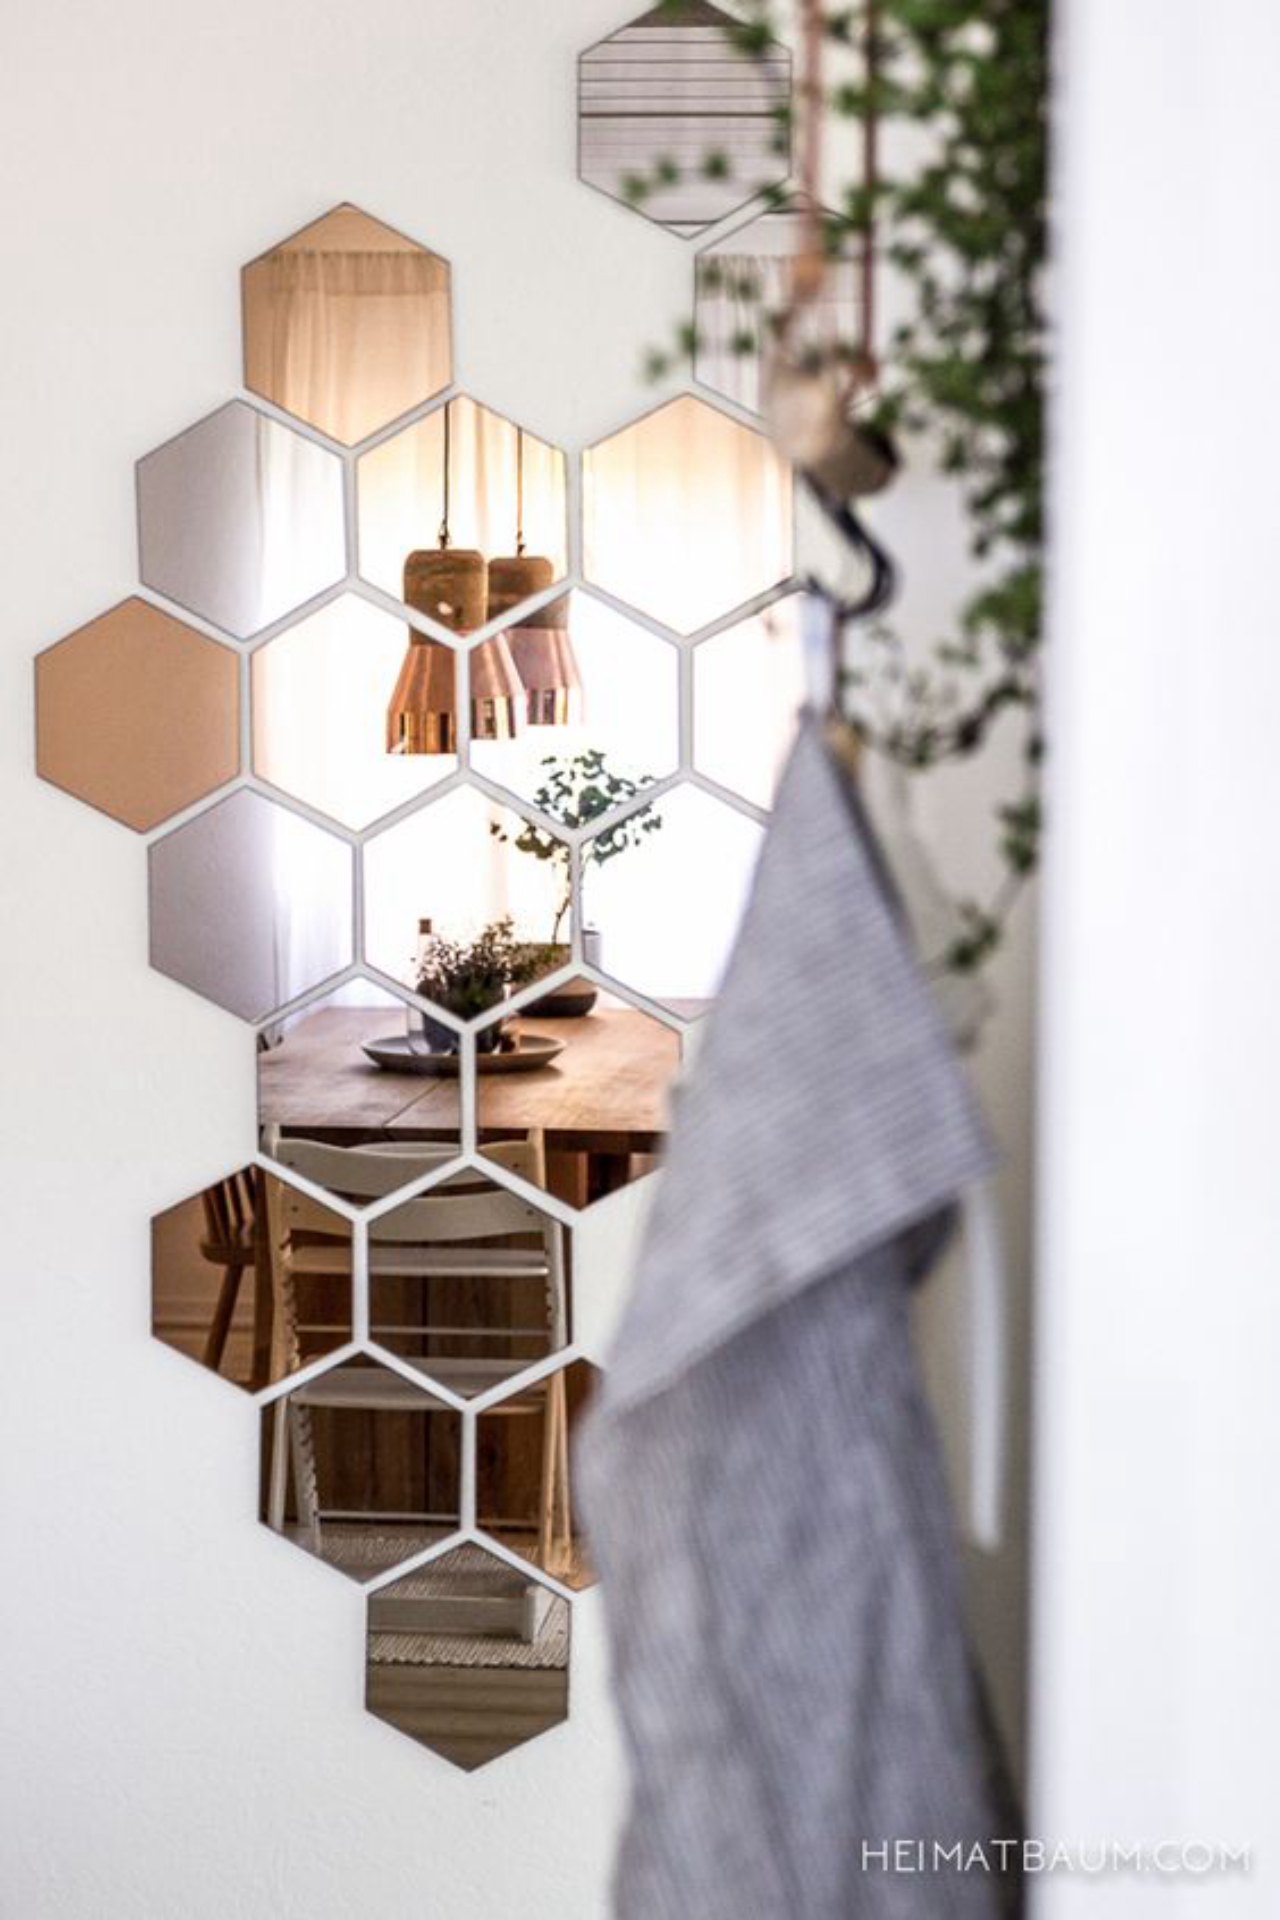 Vários espelhinhos em formato de hexágonos são dispostos lado a lado, gerando um efeito diferente no ambiente. Foto: Reprodução/Pinterest